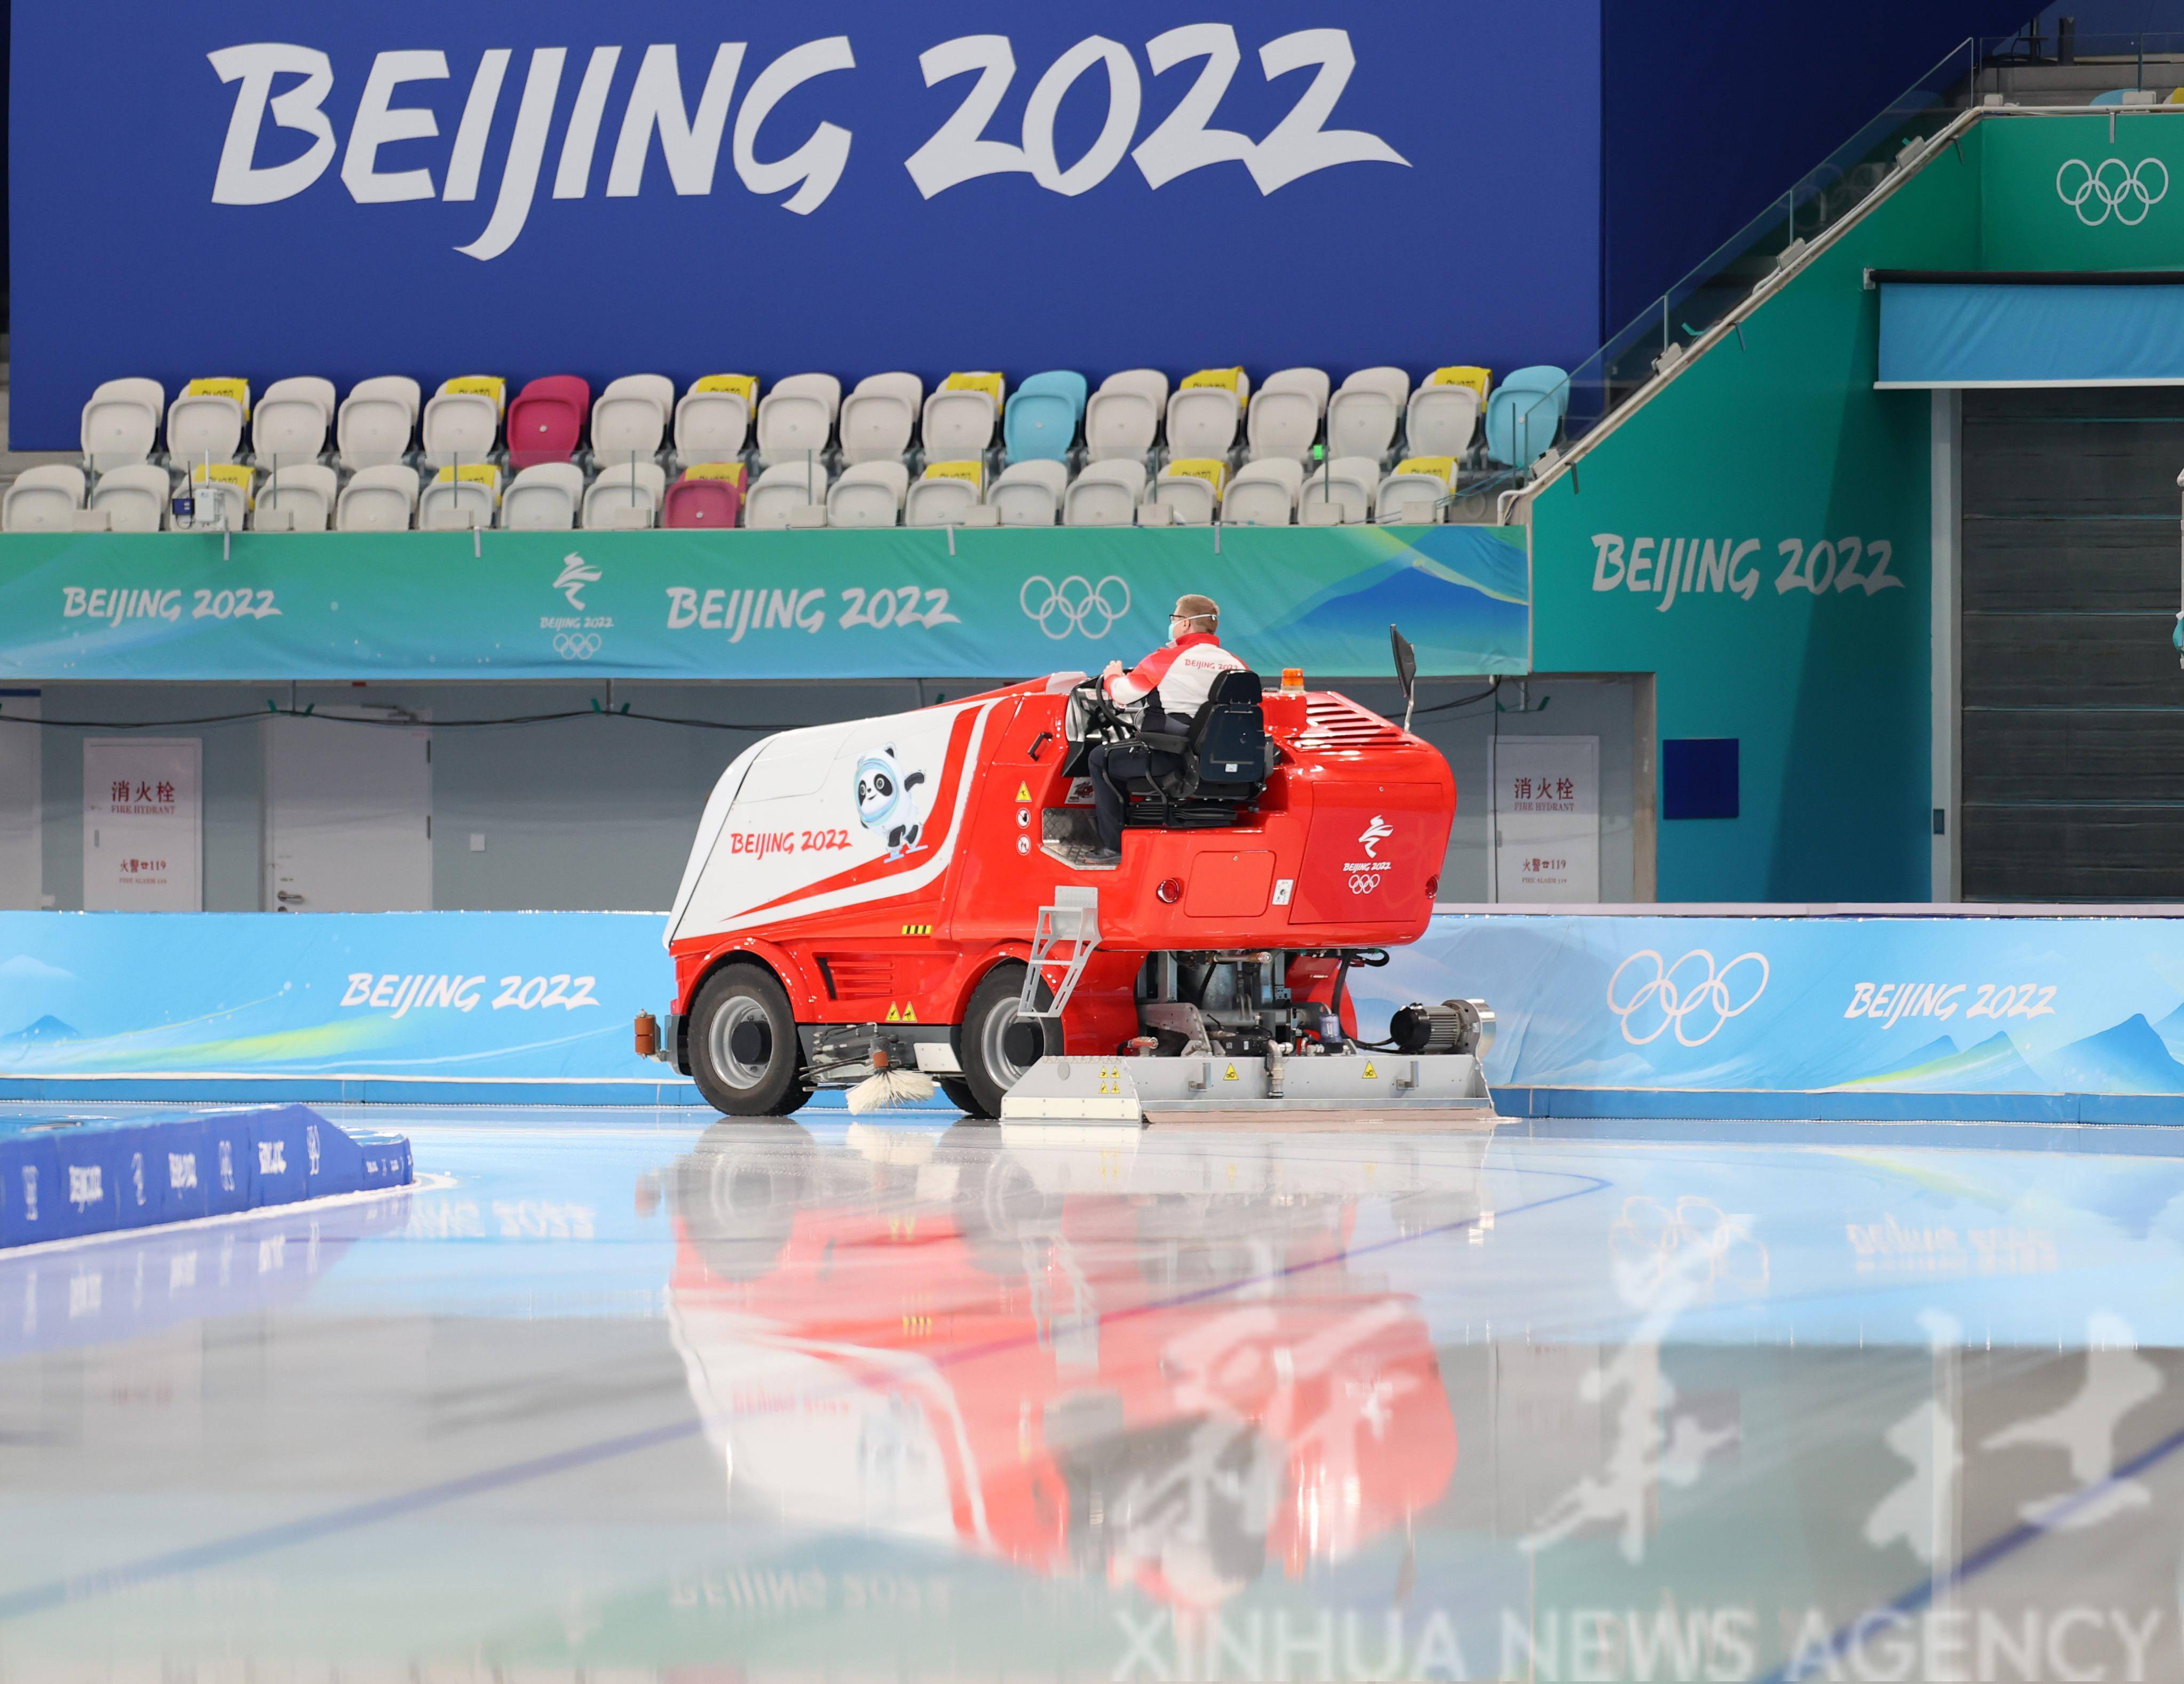 北京冬奥会场馆 冰丝图片